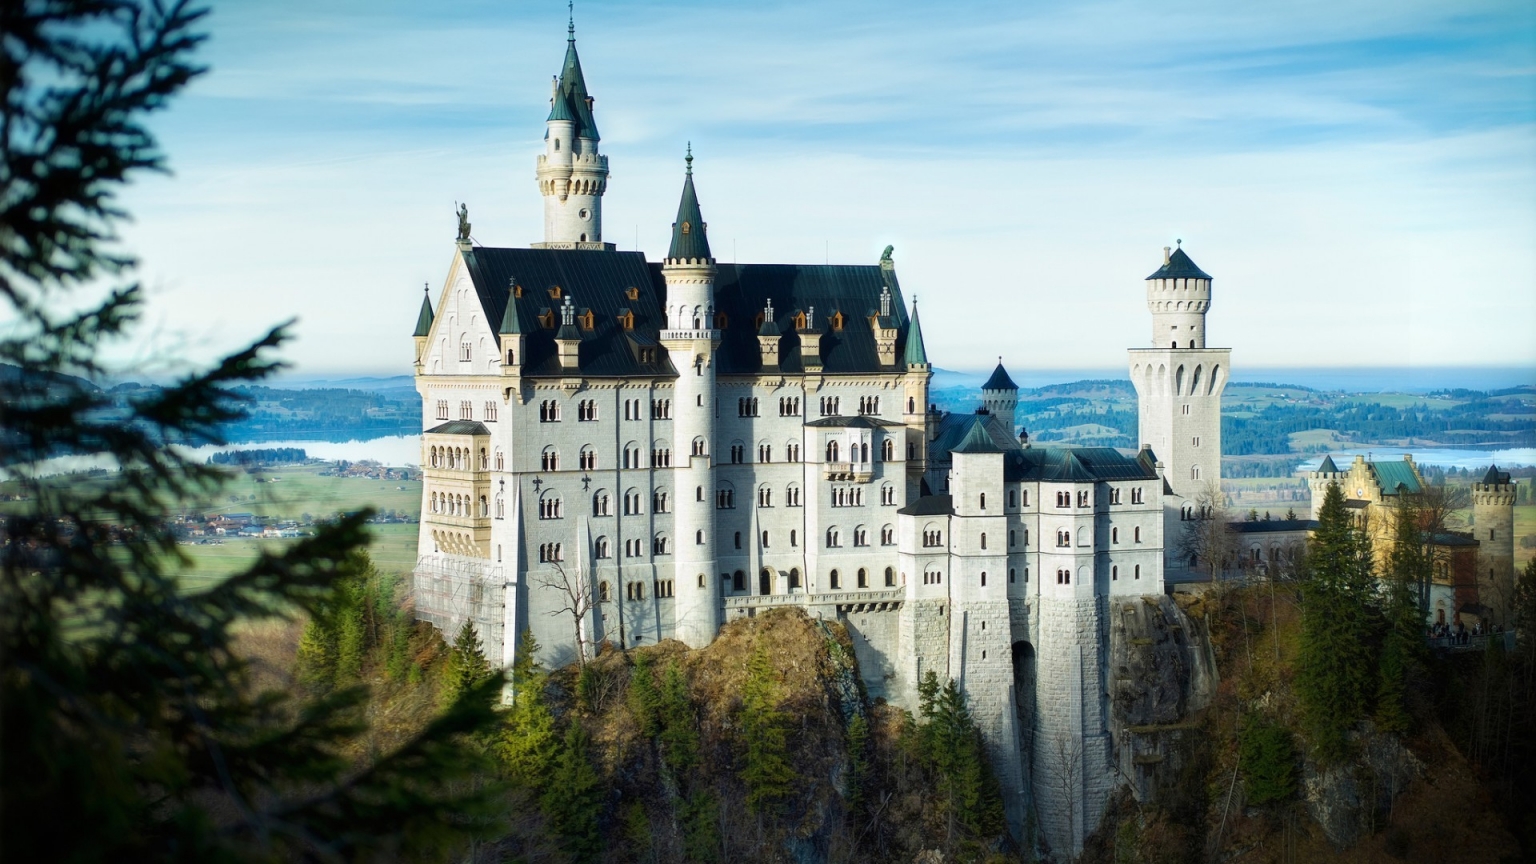 Bavaria Neuschwanstein Castle for 1536 x 864 HDTV resolution